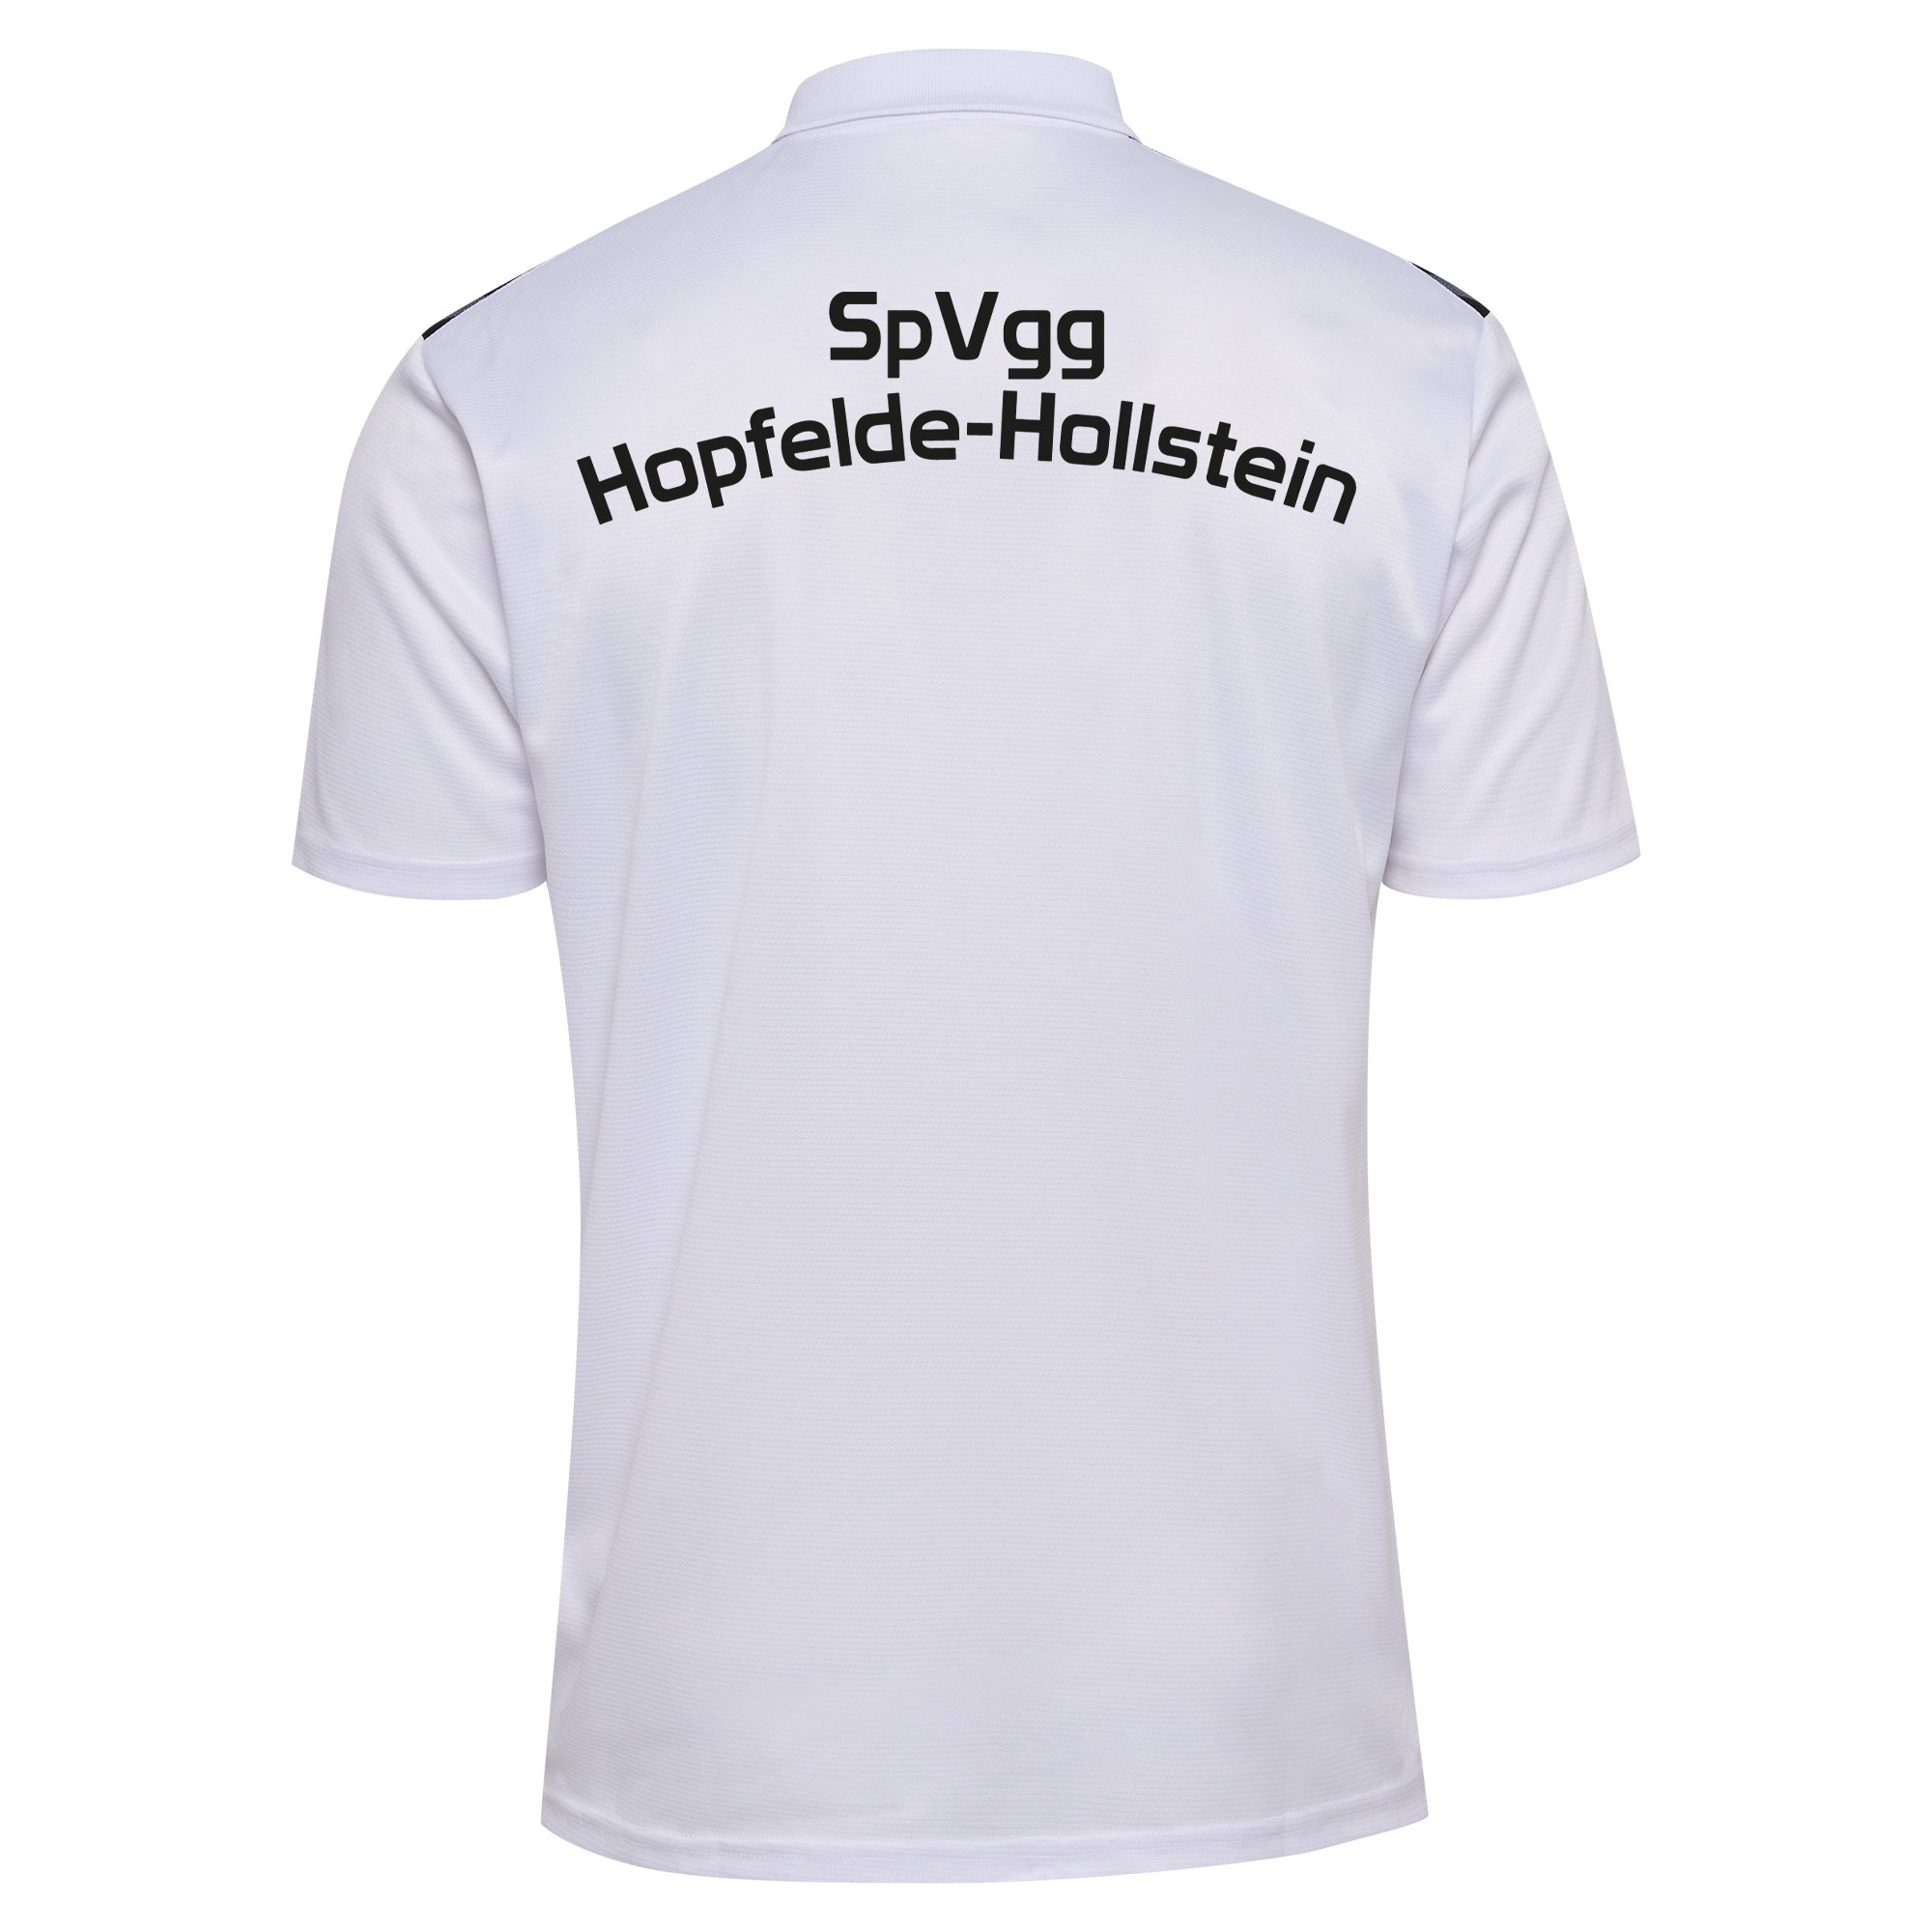 SpVgg Hopfelde-Hollstein Poloshirt